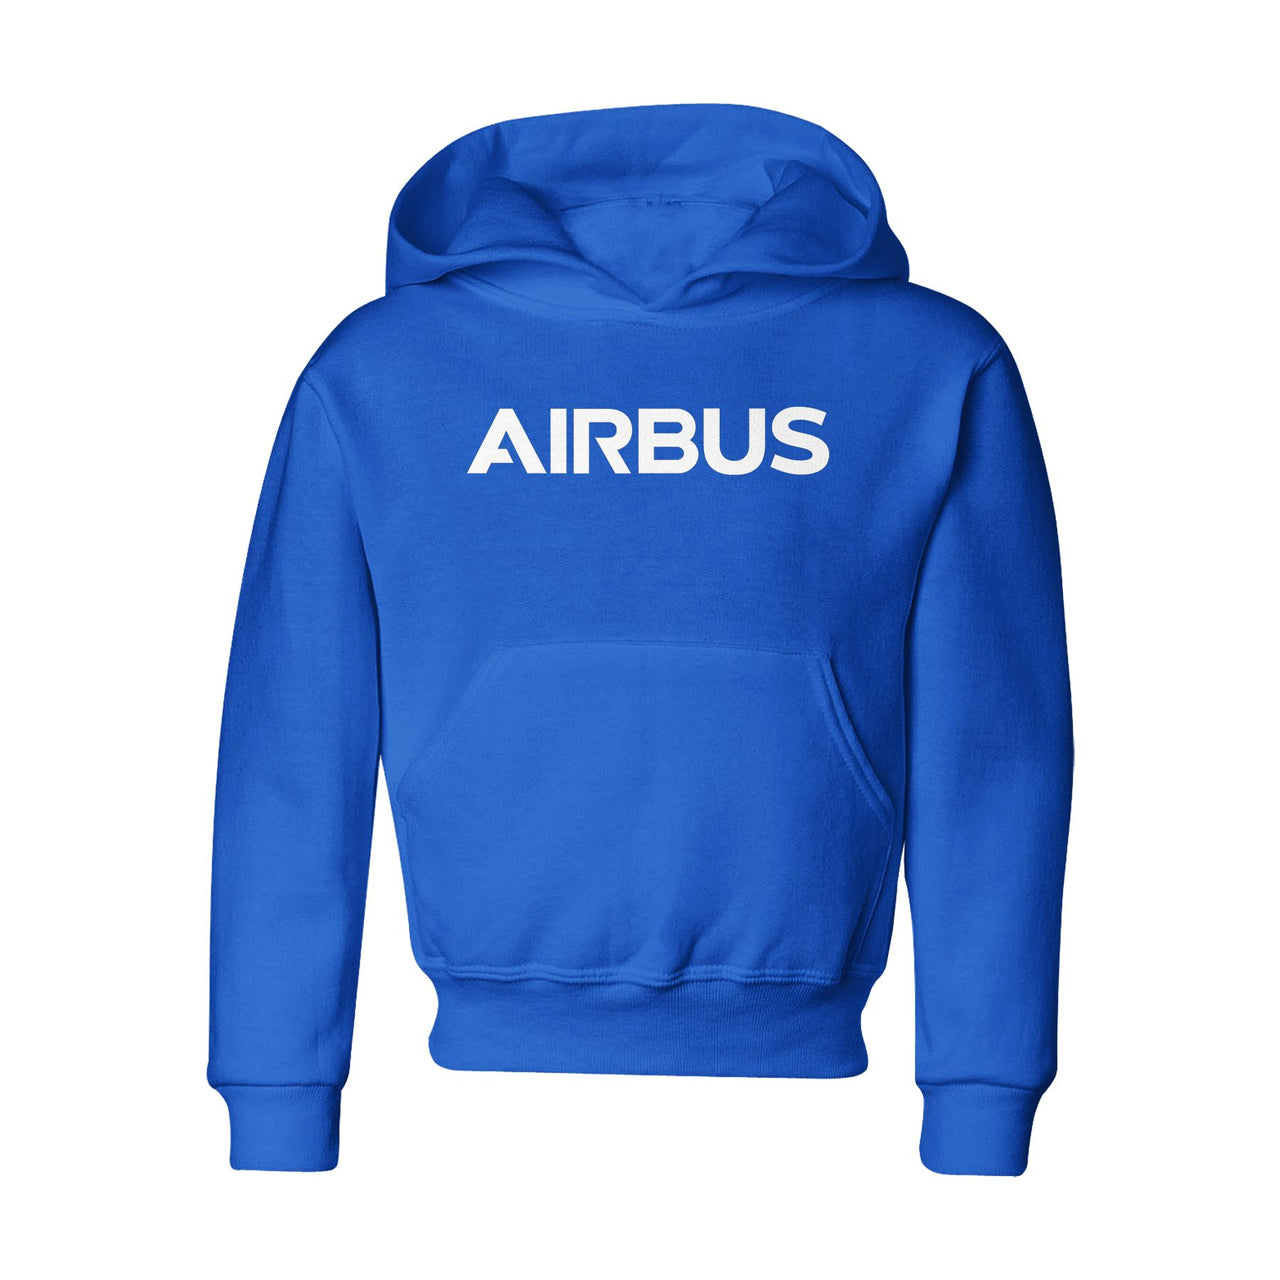 Airbus & Text Designed "CHILDREN" Hoodies